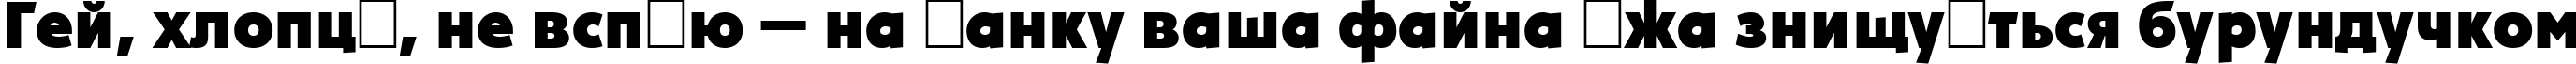 Пример написания шрифтом a_PlakatCmpl ExtraBold текста на украинском